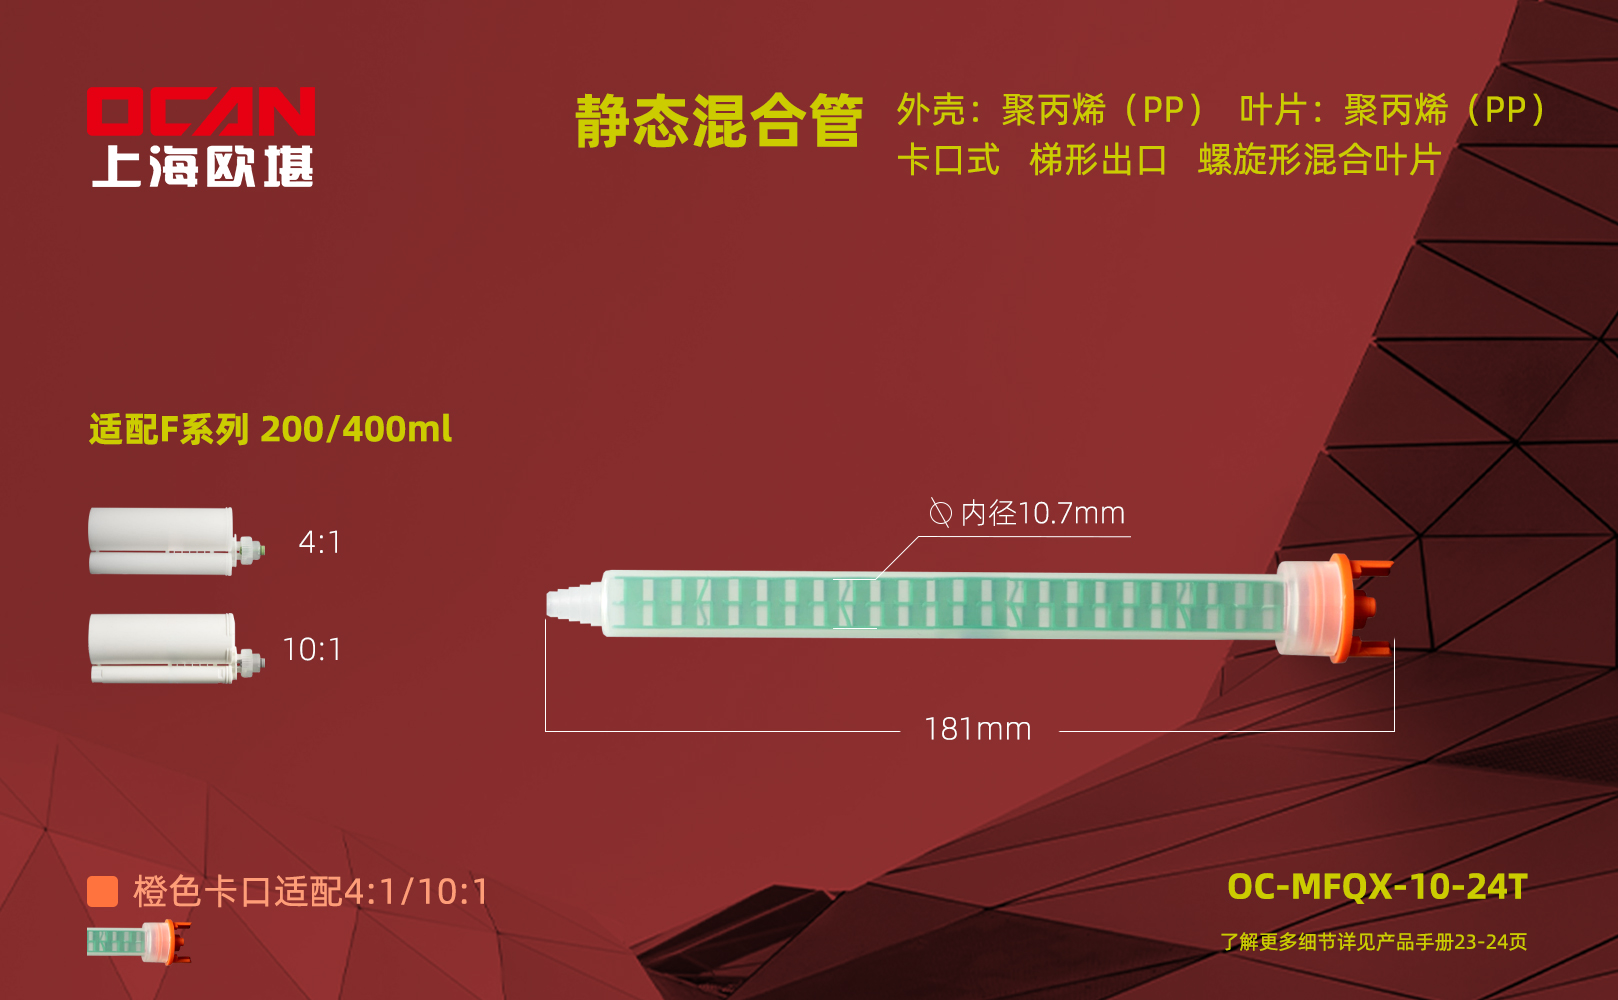 OC-MFQX-10-24T尺寸单页.jpg